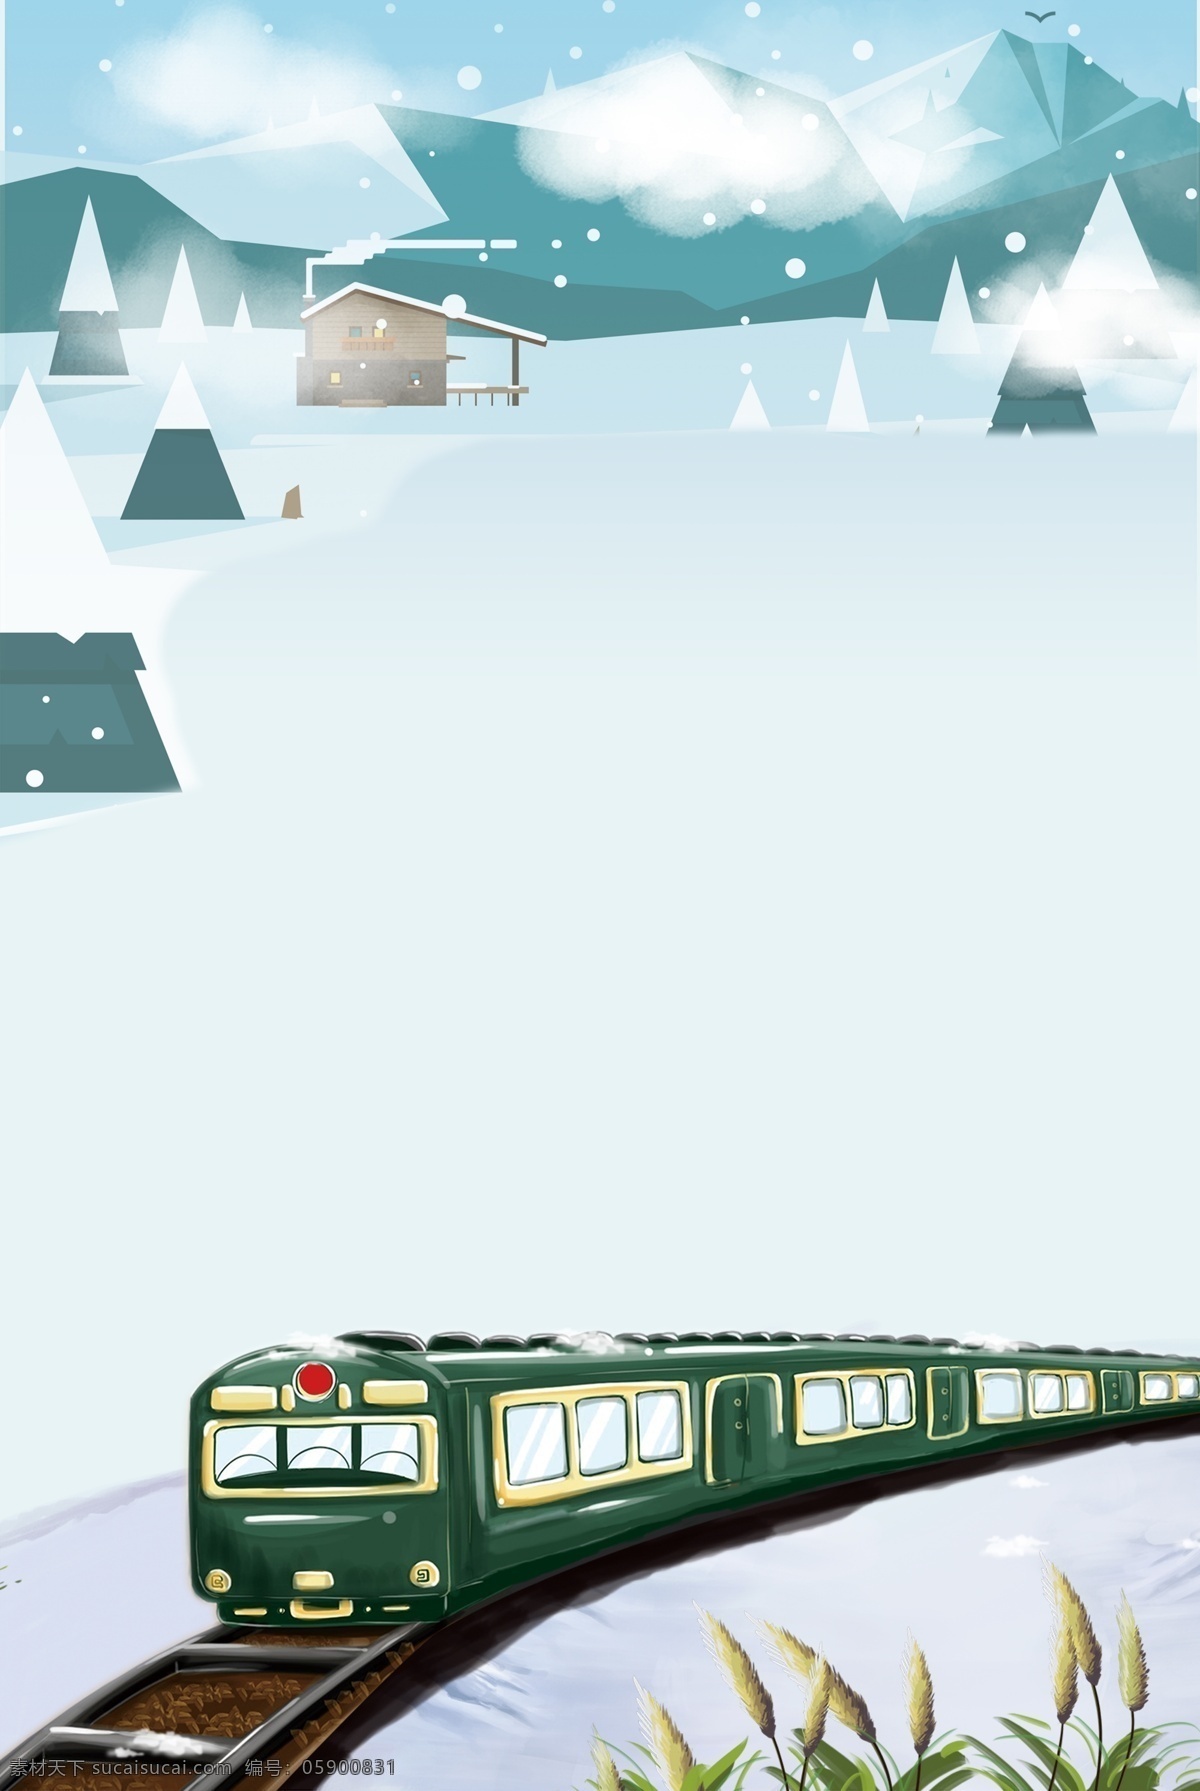 春运 回家 过年 长途跋涉 阖家团圆 火车 旅程 手绘风 卡通 回家高峰 团聚 村庄 大雪